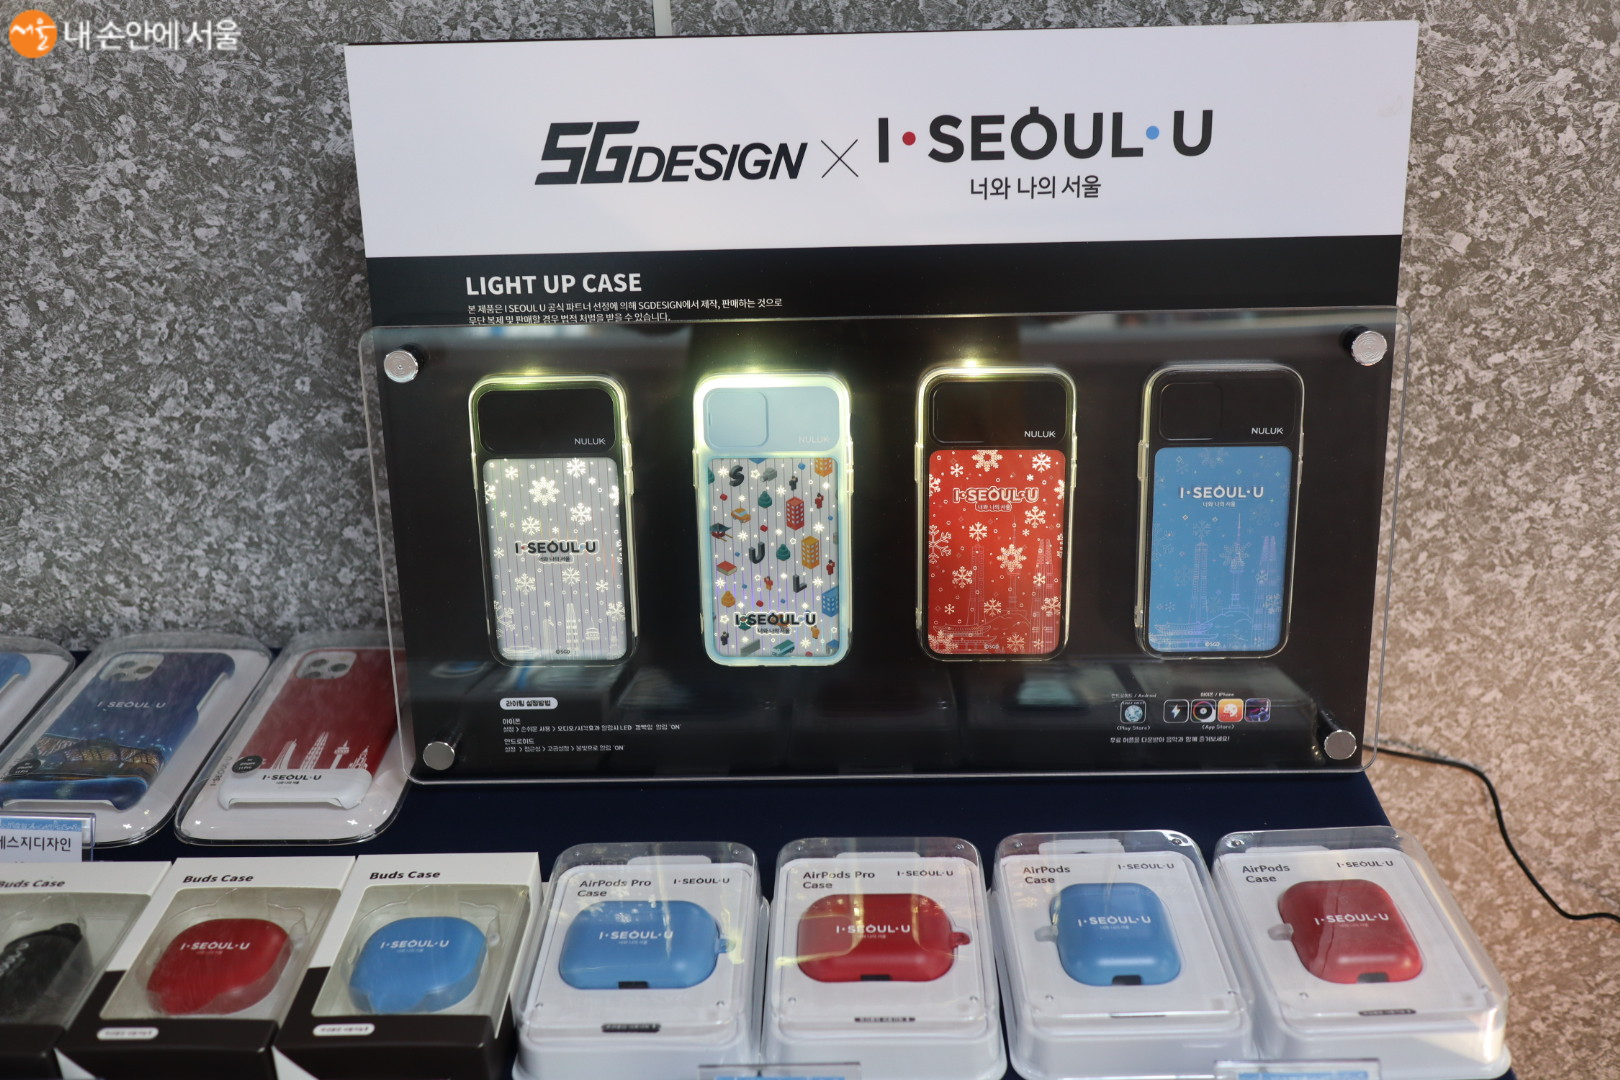 휴대폰케이스. 자체발광으로 반짝이며 빛을 낸다. 서울 홍보 제품으로도 좋아보인다